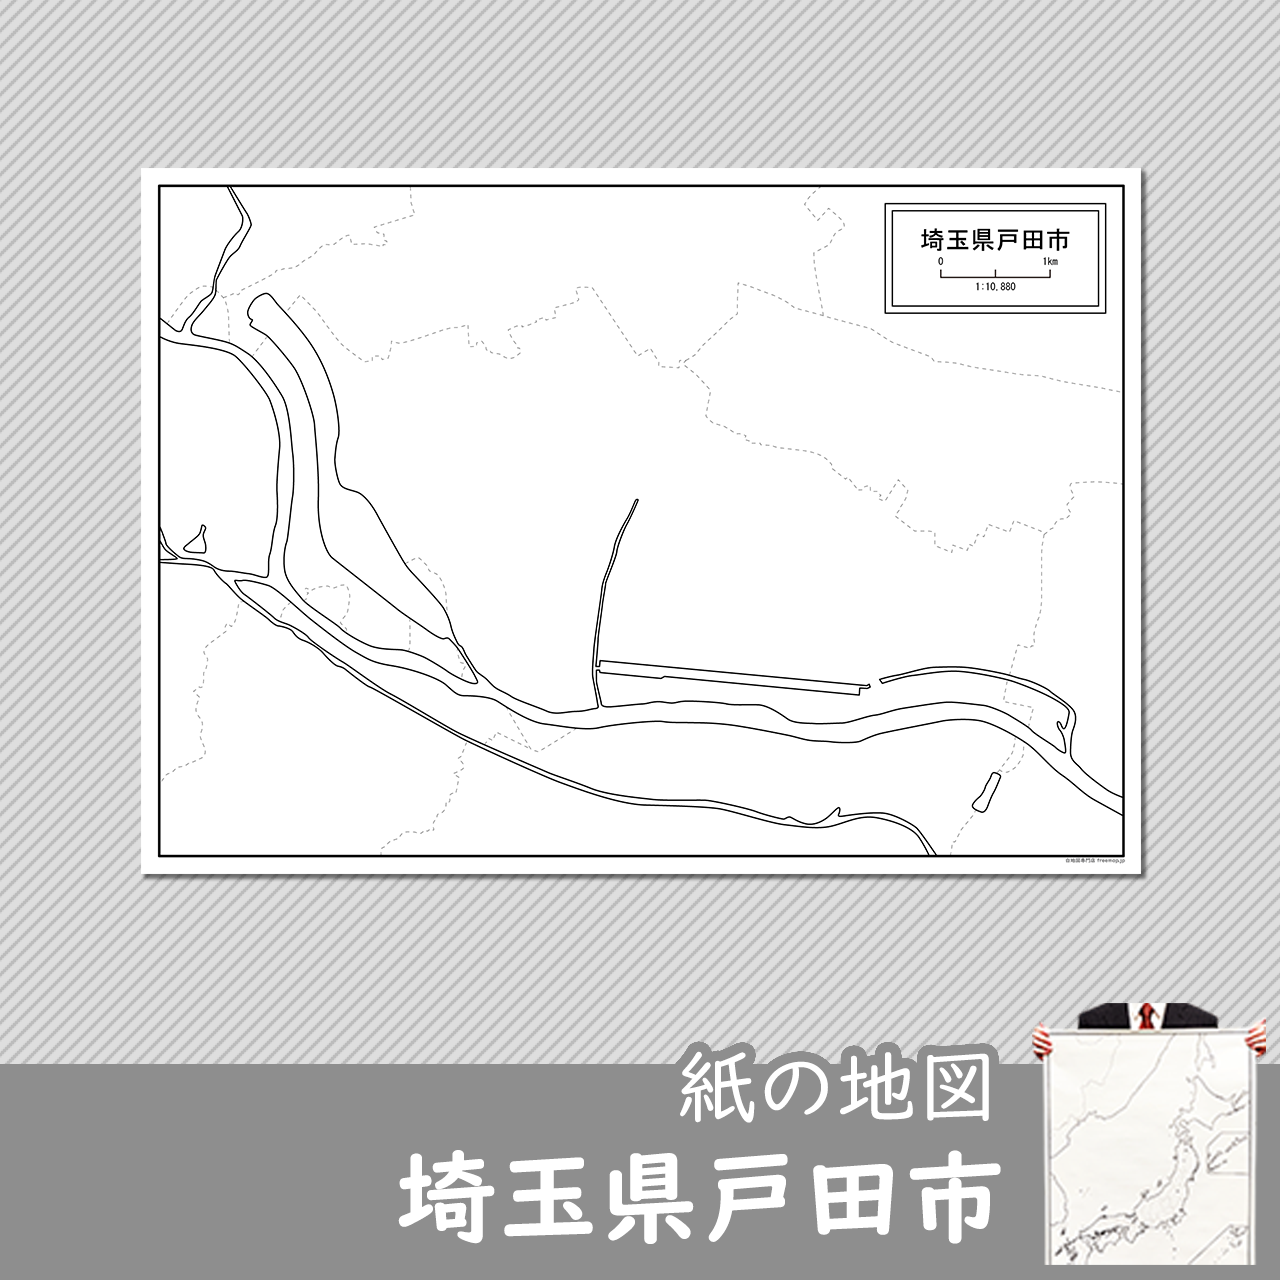 戸田市の紙の白地図のサムネイル